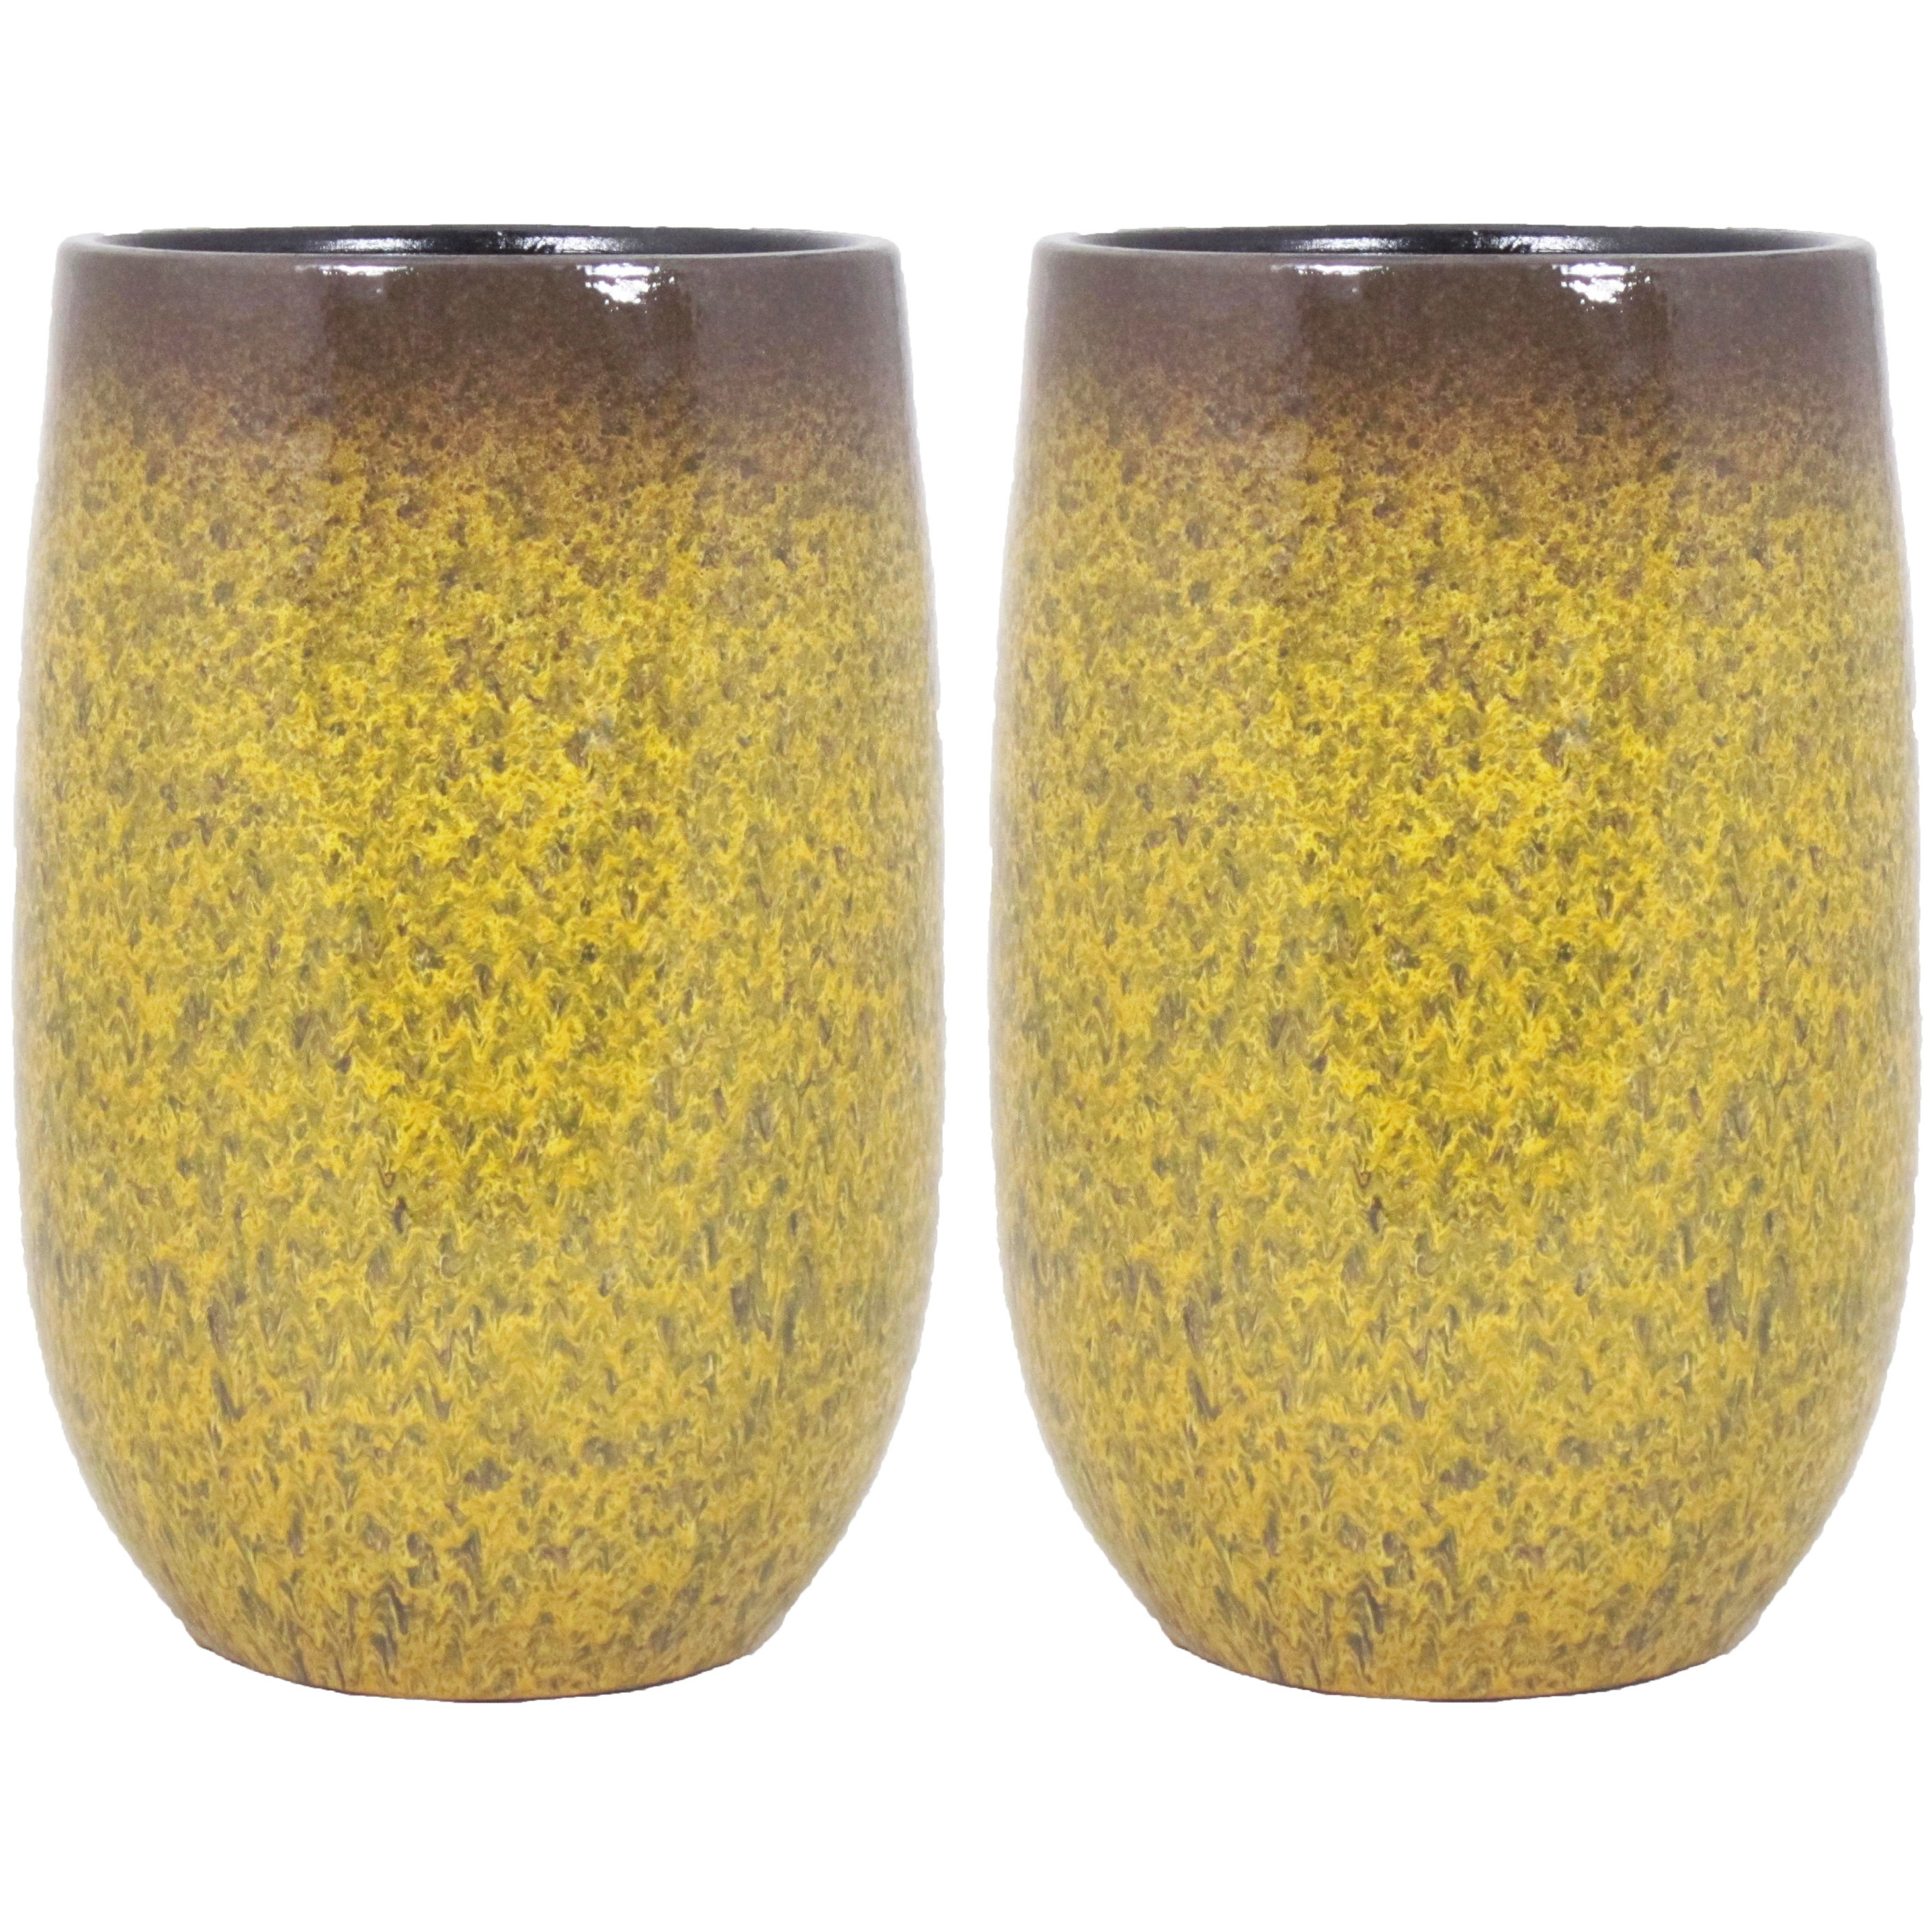 2x stuks bloempot vaas goud geel flakes keramiek voor bloemen-planten H40 x D22 cm